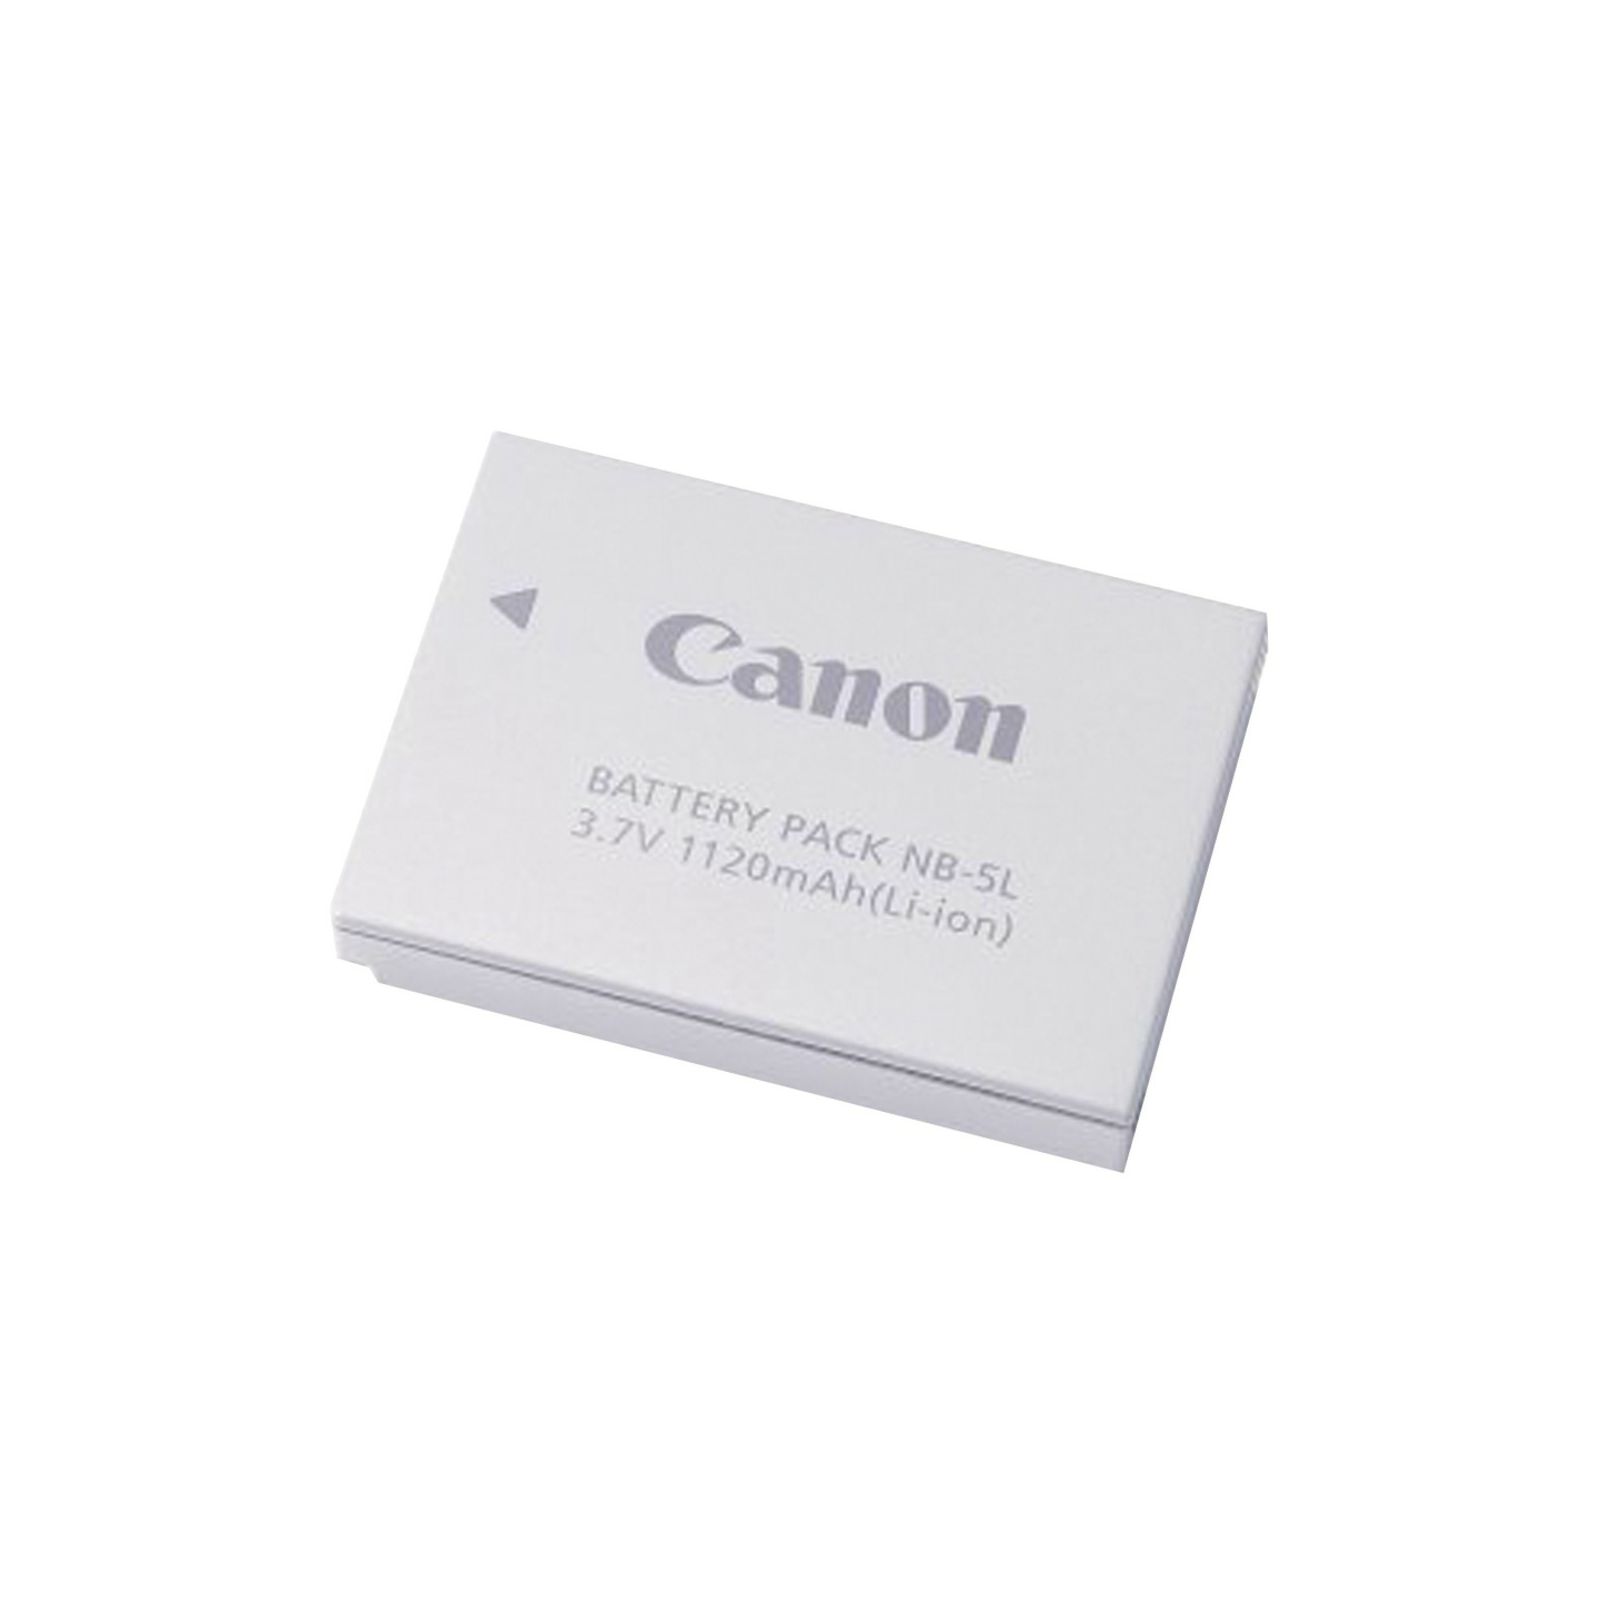 Canon NB-5L baterija za PowerShot S110, S100, SX220 HS, SX230 HS, SX210 IS, SX200 IS, SD990 IS, SD880 IS, SD890 IS, SD790 IS, SD950 IS, SD870 IS, SD850 IS, SD900, SD800 IS, SD700 IS, SD970 IS